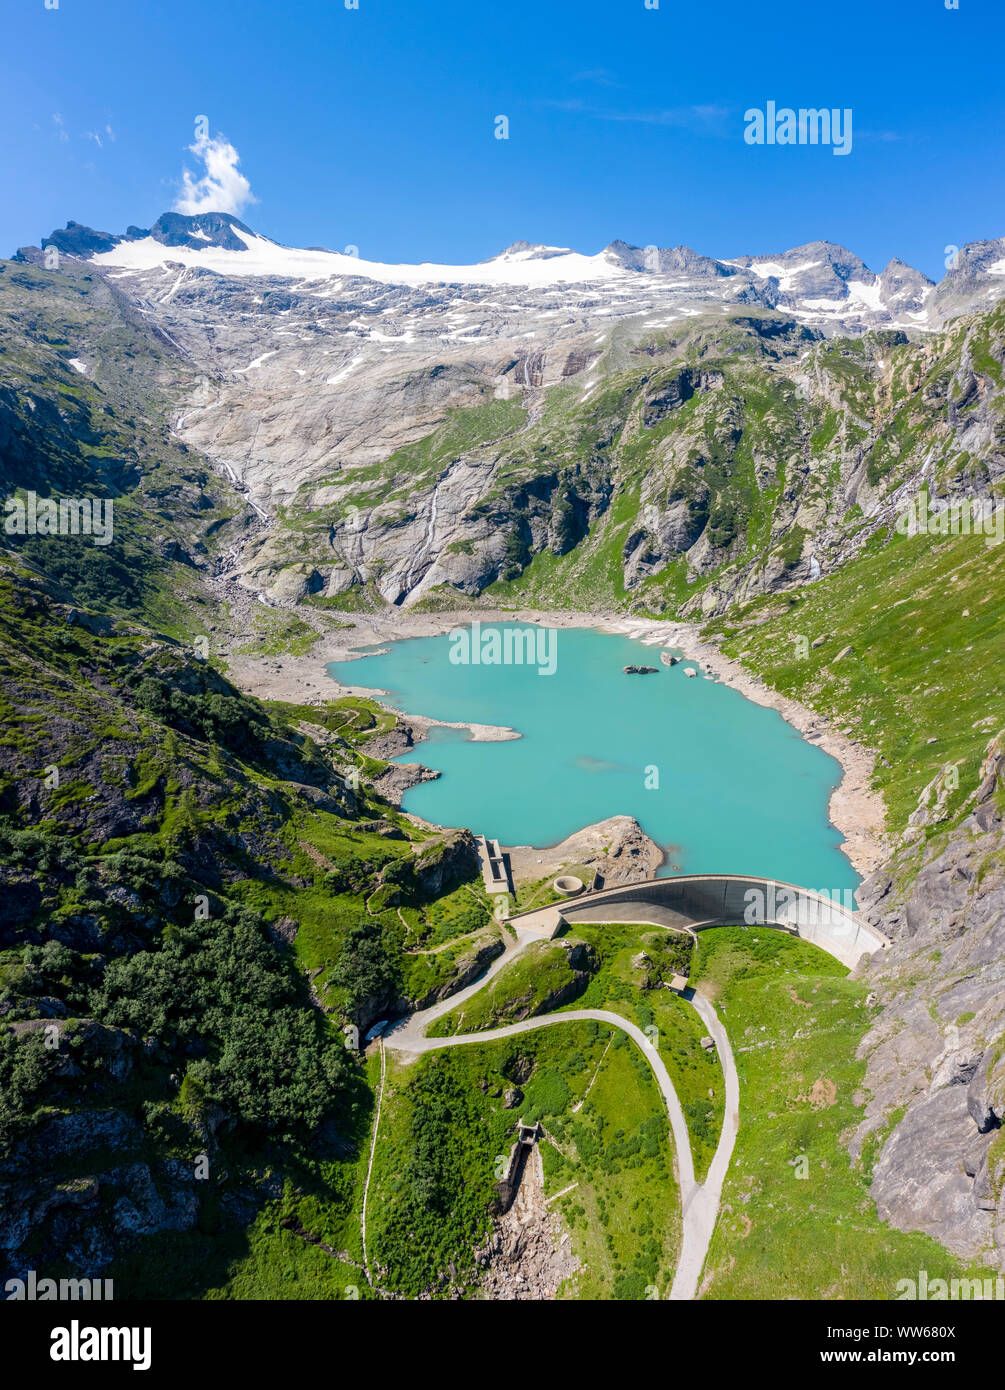 Vista aérea de Basodino glaciar y Lago del Zott con su presa, Robiei, Bavona Valley, el valle de Maggia, Alpes Lepontine, Canton Ticino, Suiza. Foto de stock